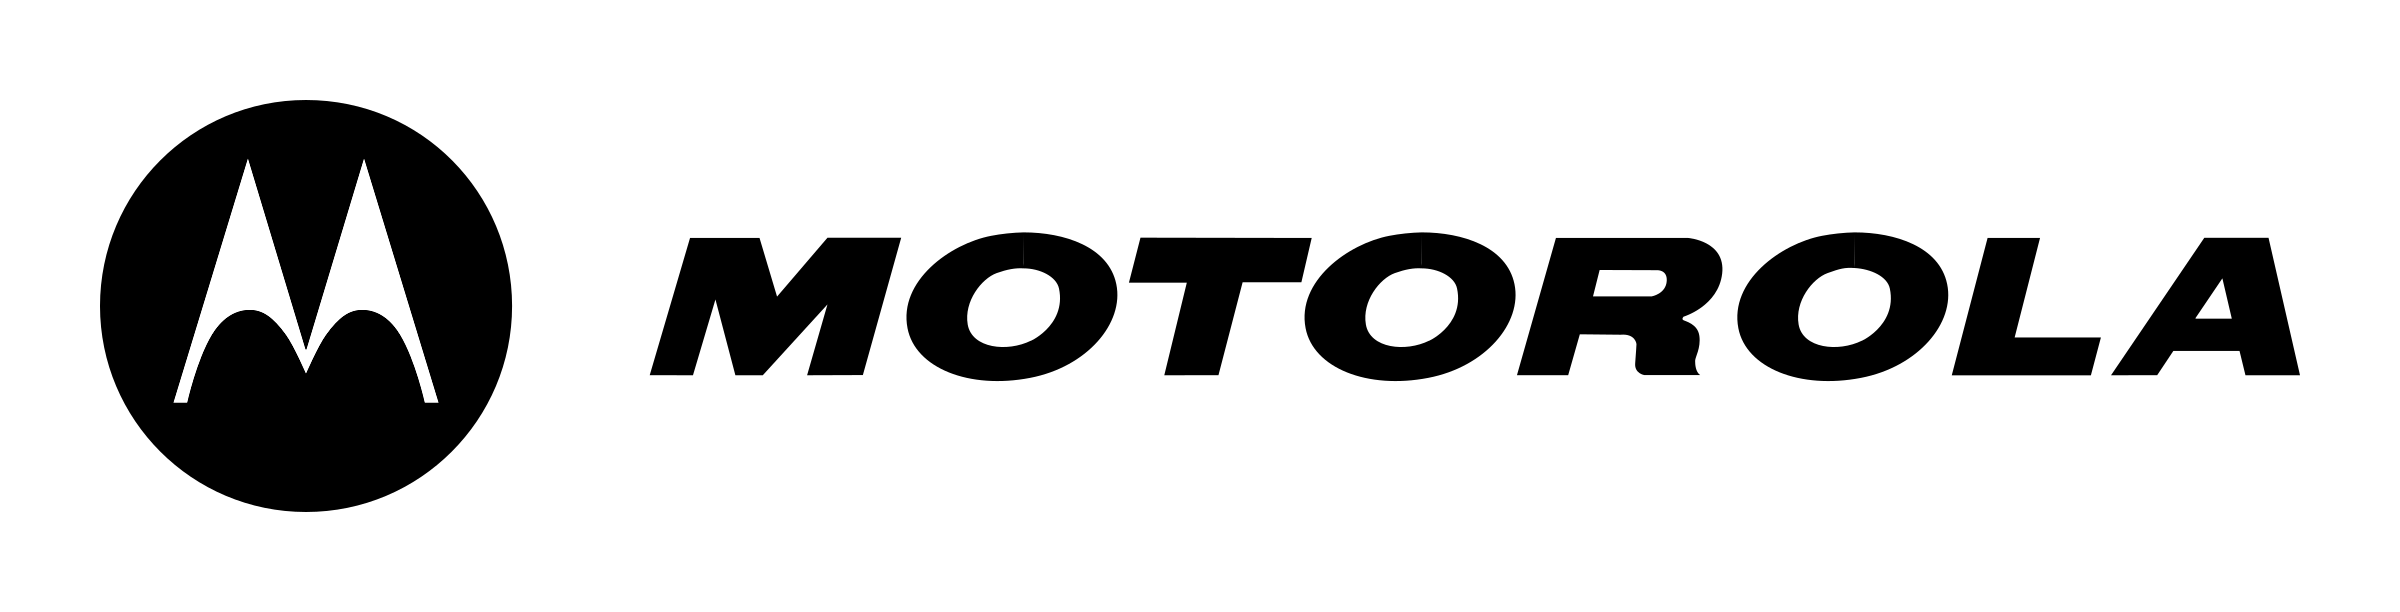 Motorola-logo-black-and-white.png